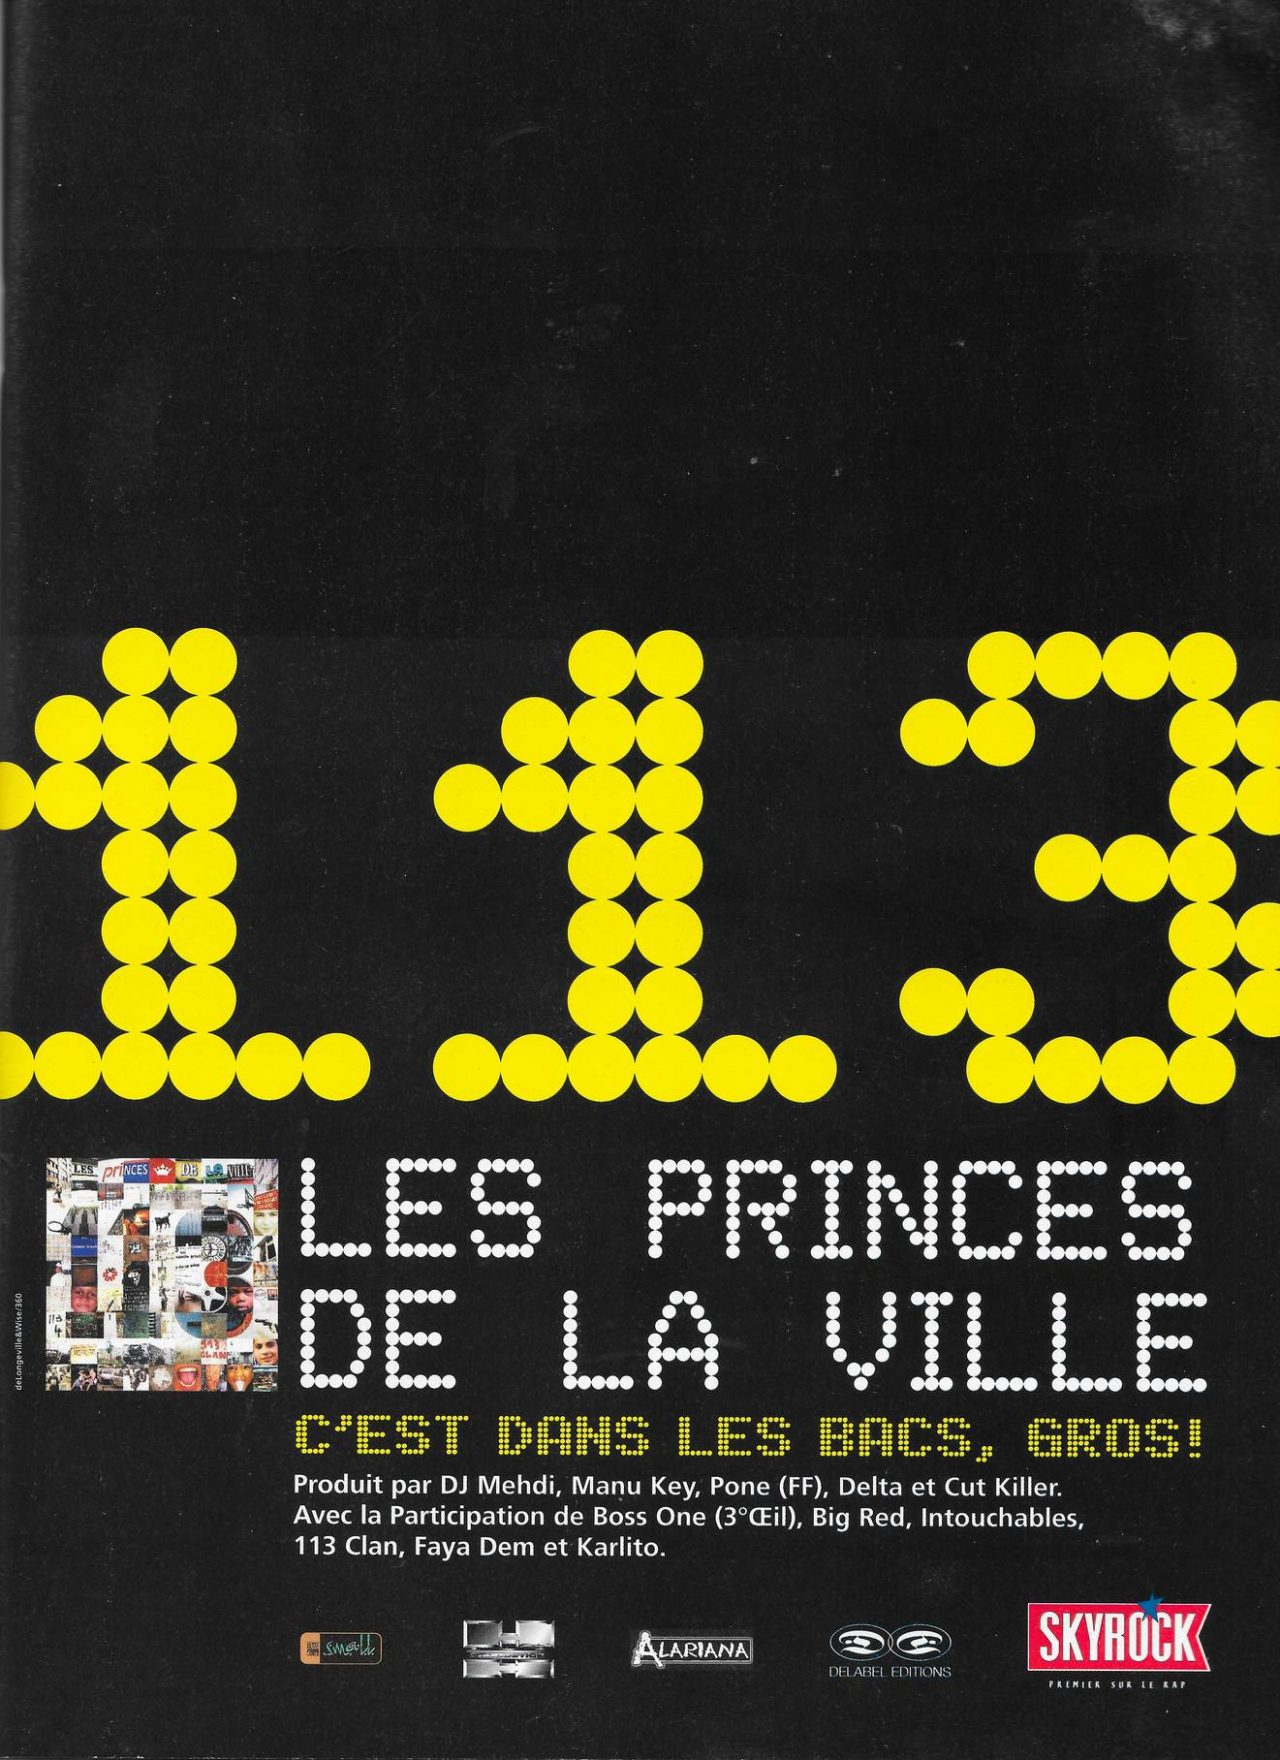 Album Les Princes de la Ville - 113 : Ecoute gratuite